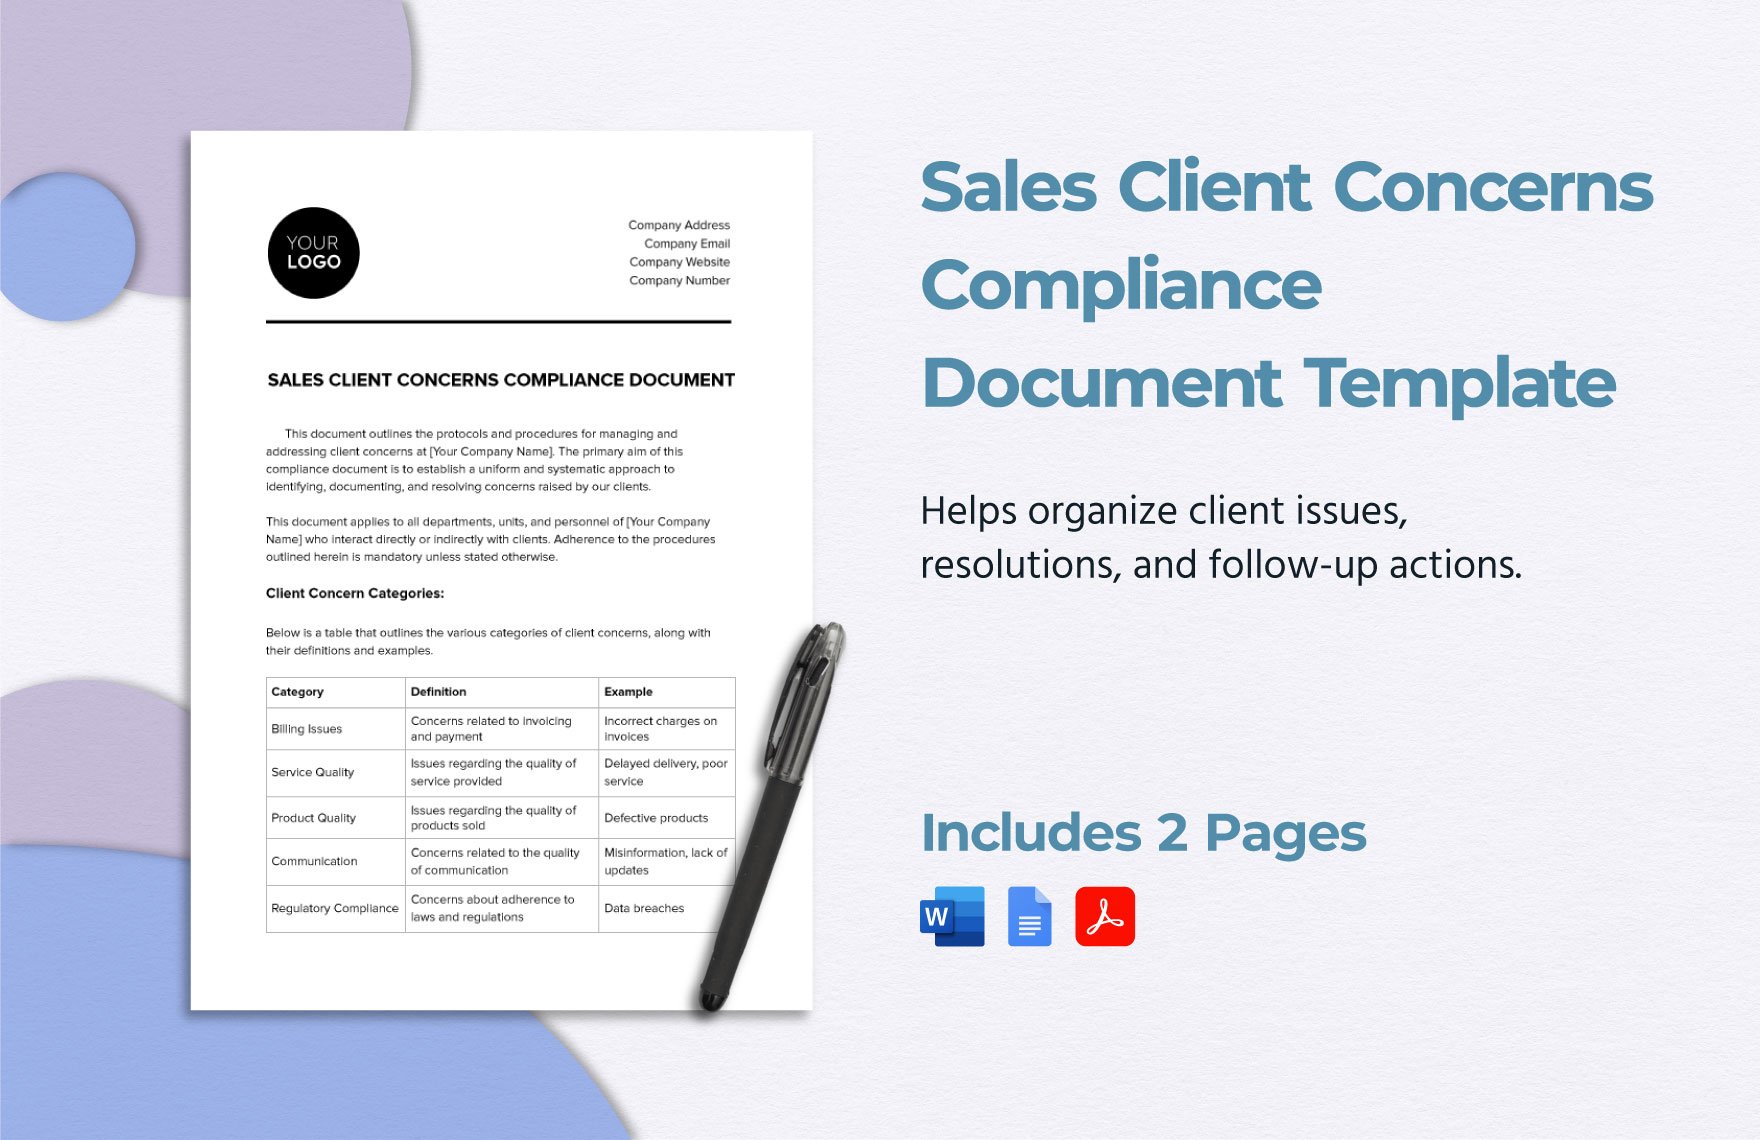 Sales Client Concerns Compliance Document Template